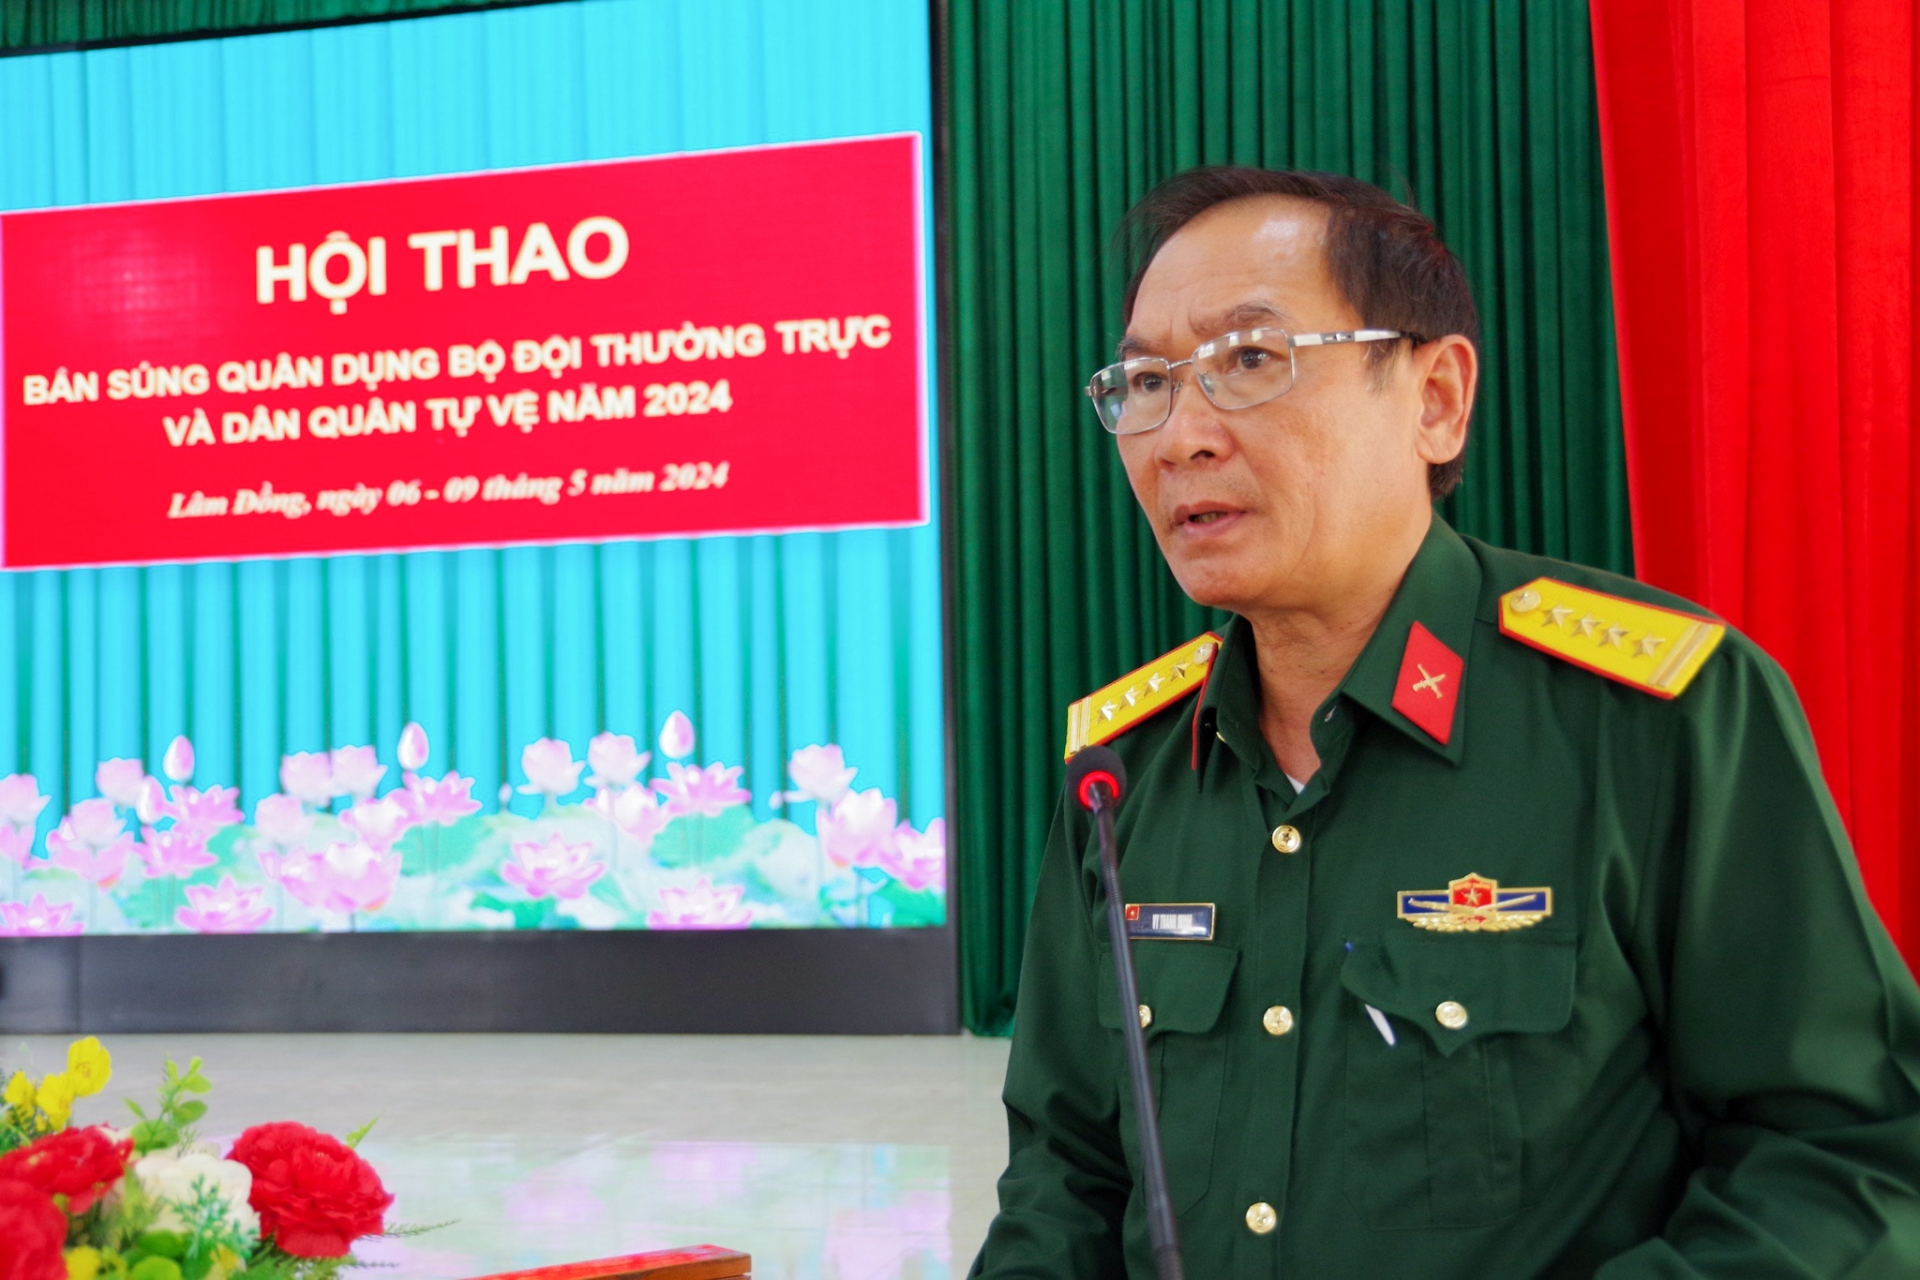 Đại tá Vy Thanh Minh - Phó Chỉ huy trưởng, Tham mưu trưởng Bộ CHQS tỉnh Lâm Đồng phát biểu tại lễ bế mạc hội thao 